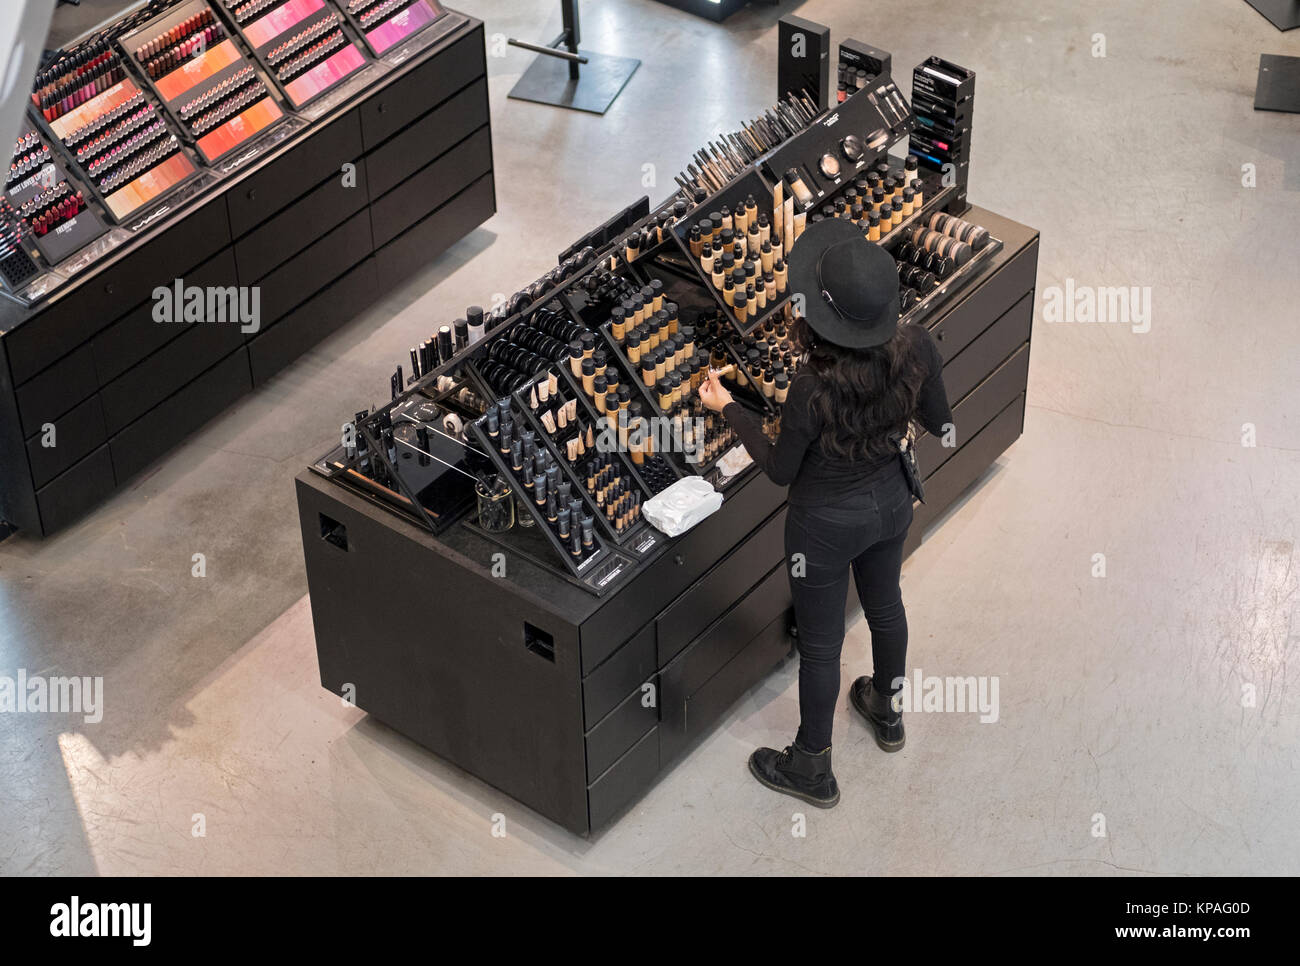 Eine unidentifed junge Dame räumt den MAC Cosmetics counter bei Macy's Herald Square in Manhattan, New York City, Stockfoto